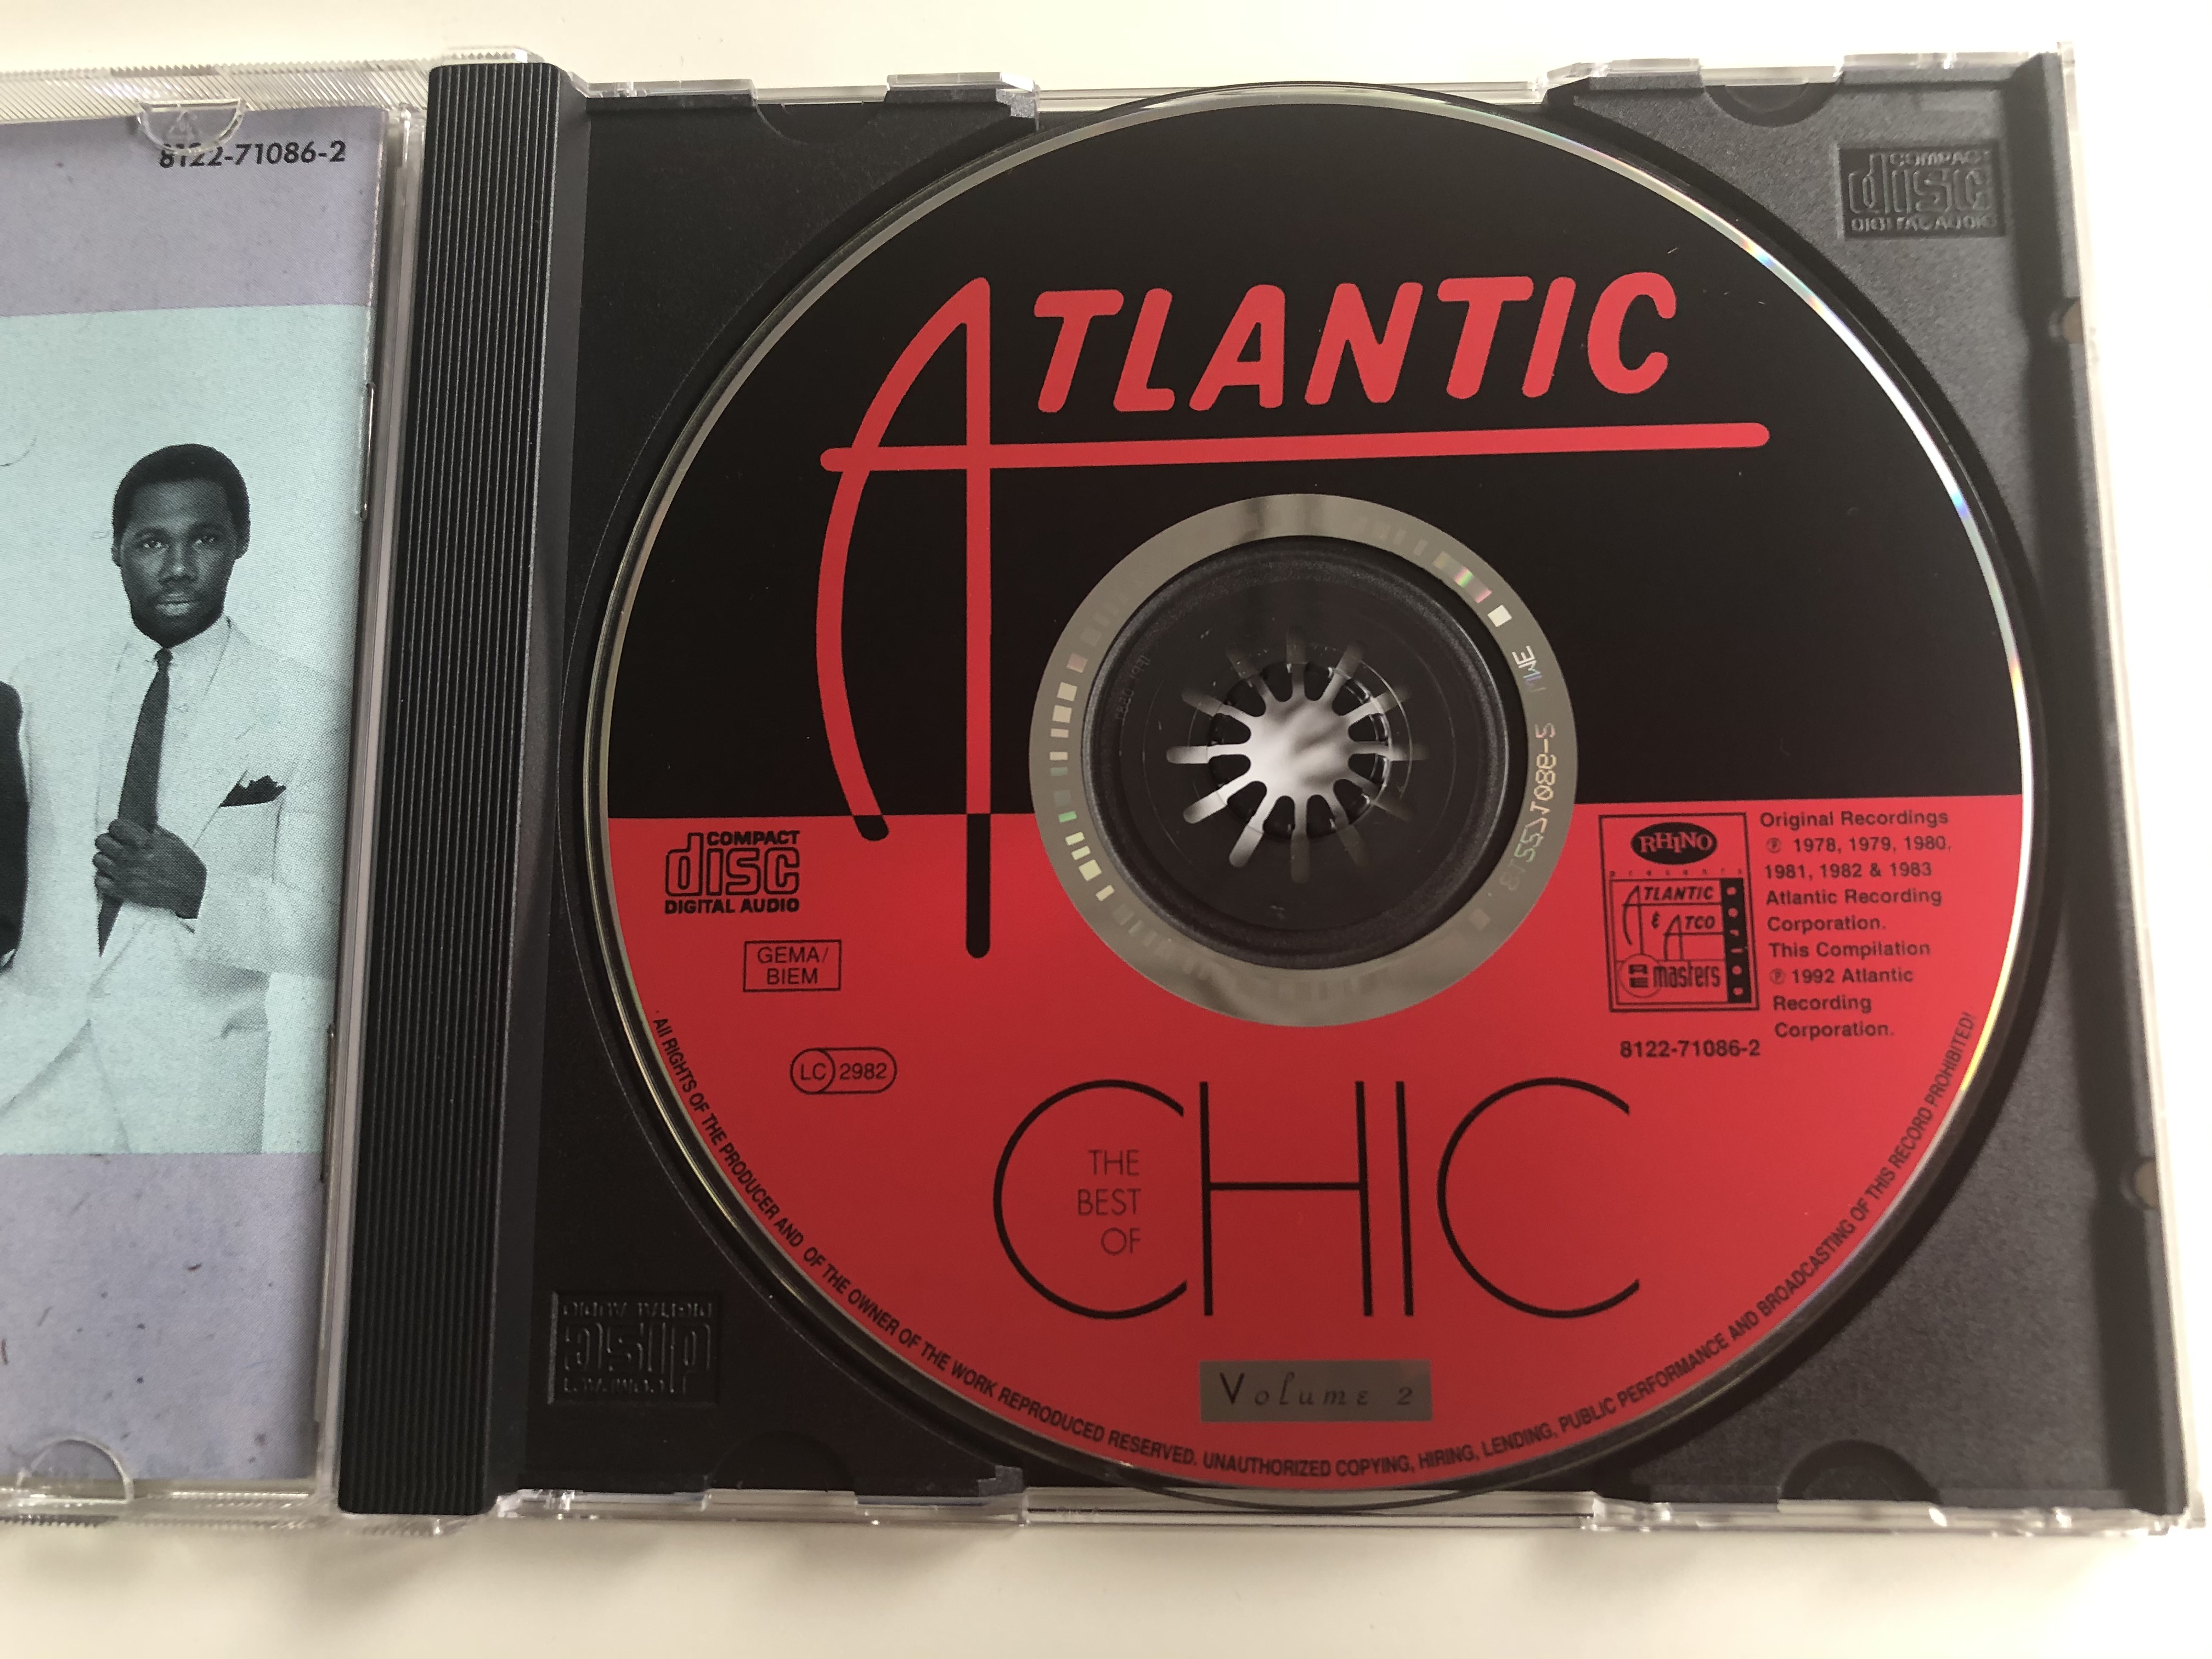 the-best-of-chic-volume-2-rhino-records-audio-cd-1992-8122-71086-2-6-.jpg